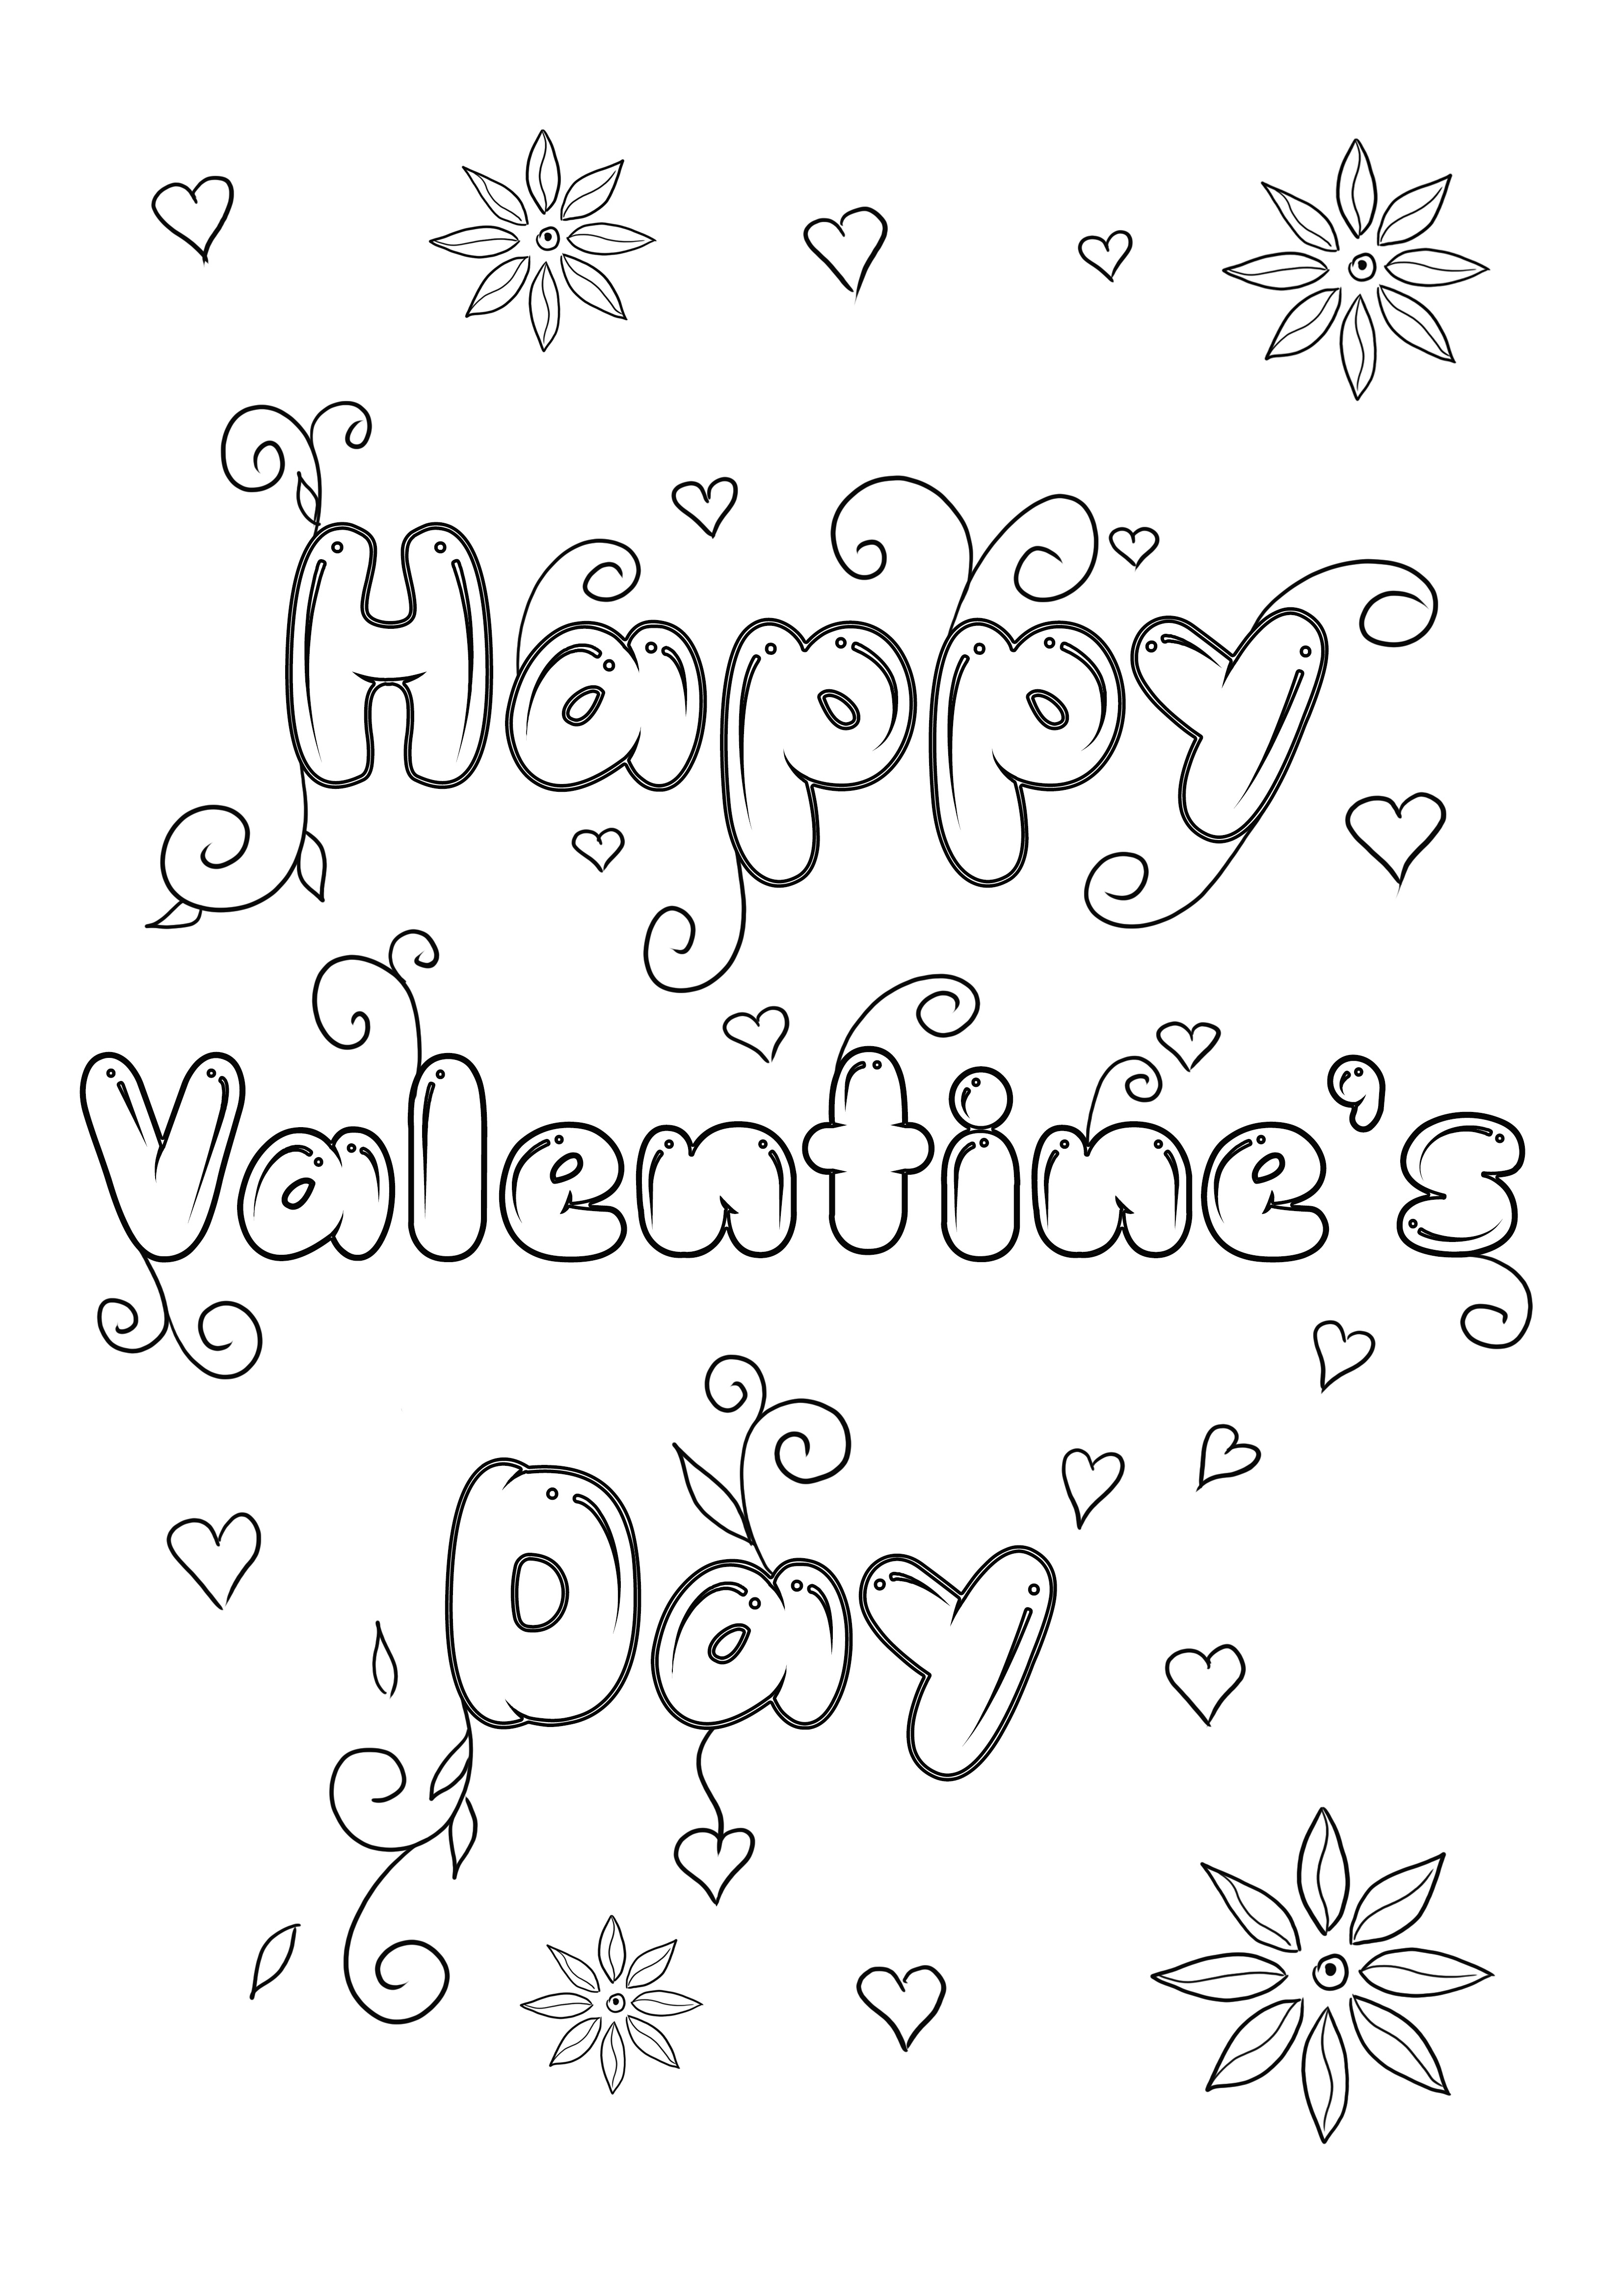 Téléchargez ou imprimez gratuitement la Saint-Valentin à colorier pour les enfants en s'amusant